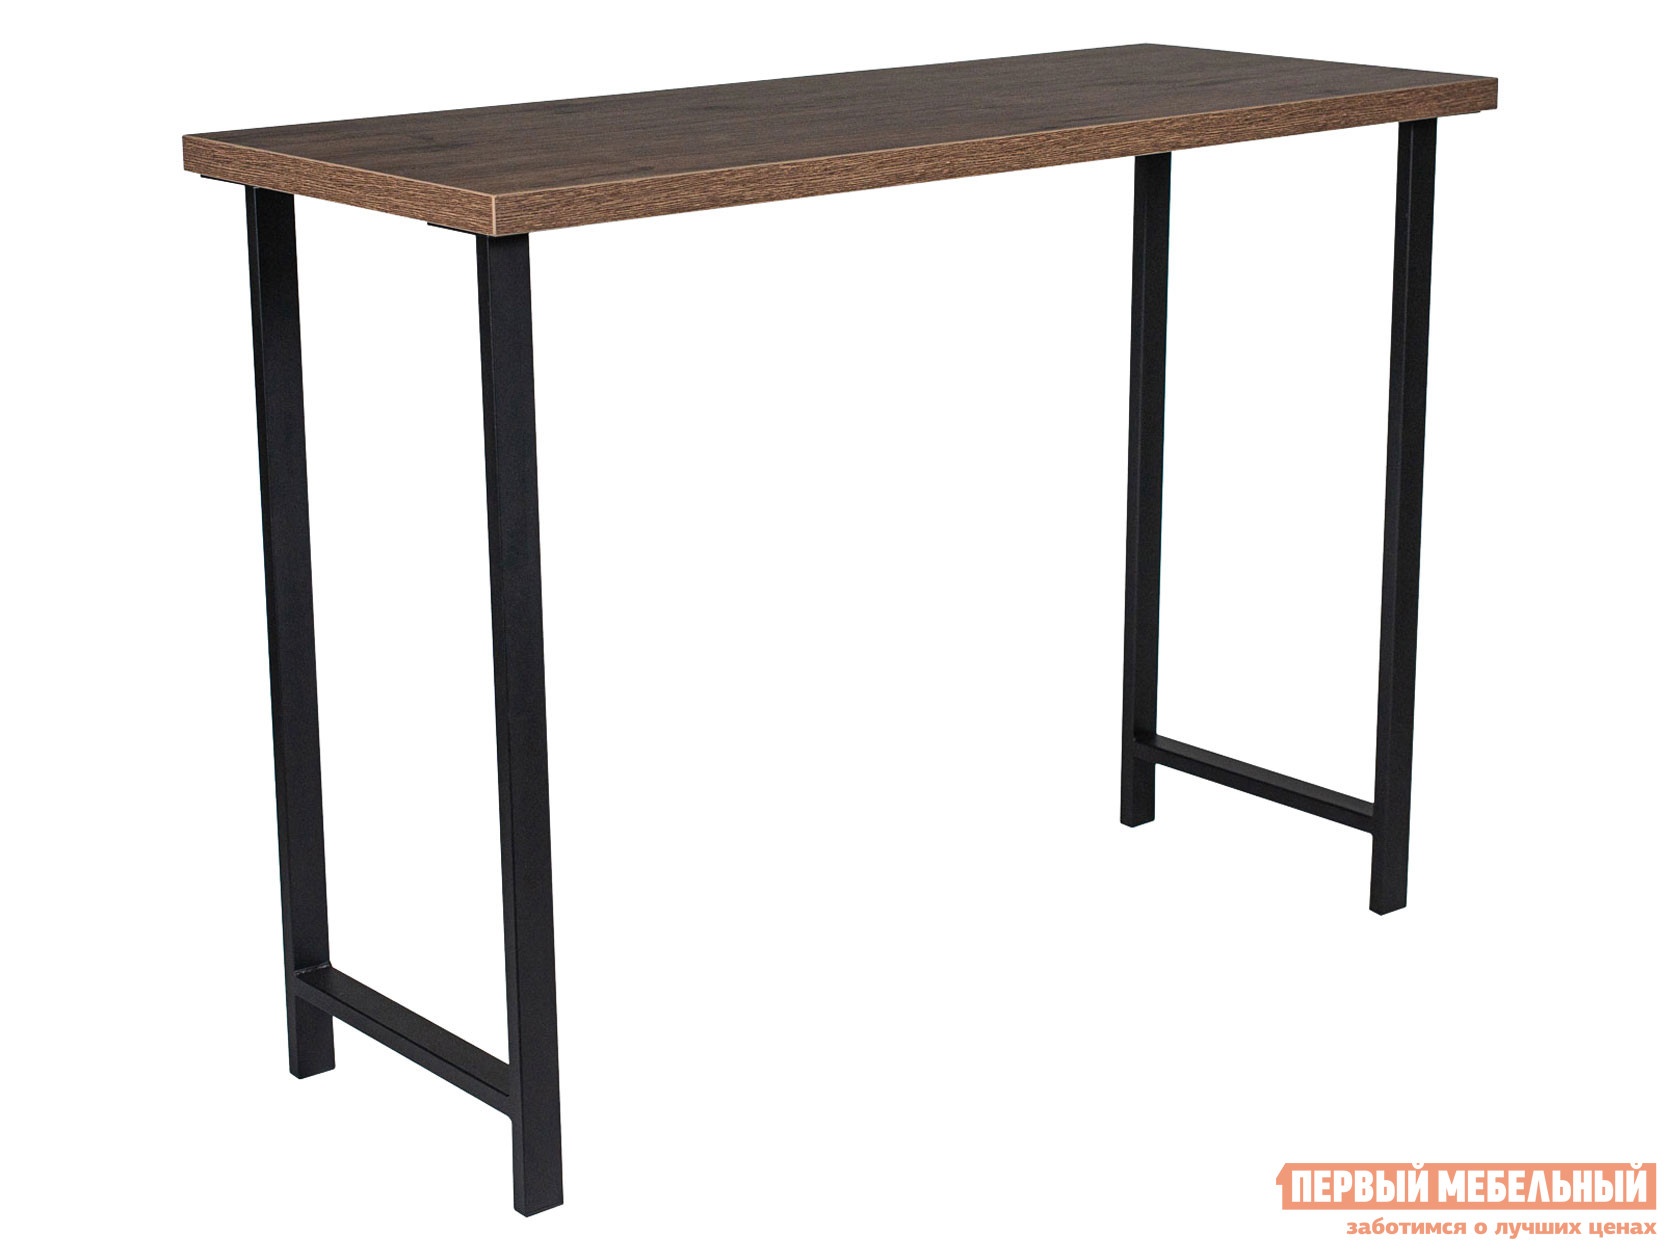 Кухонный стол стол дп1-02-04 1200 500 880 м94 стол-консоль лдсп велингтон черный матовый preview 1